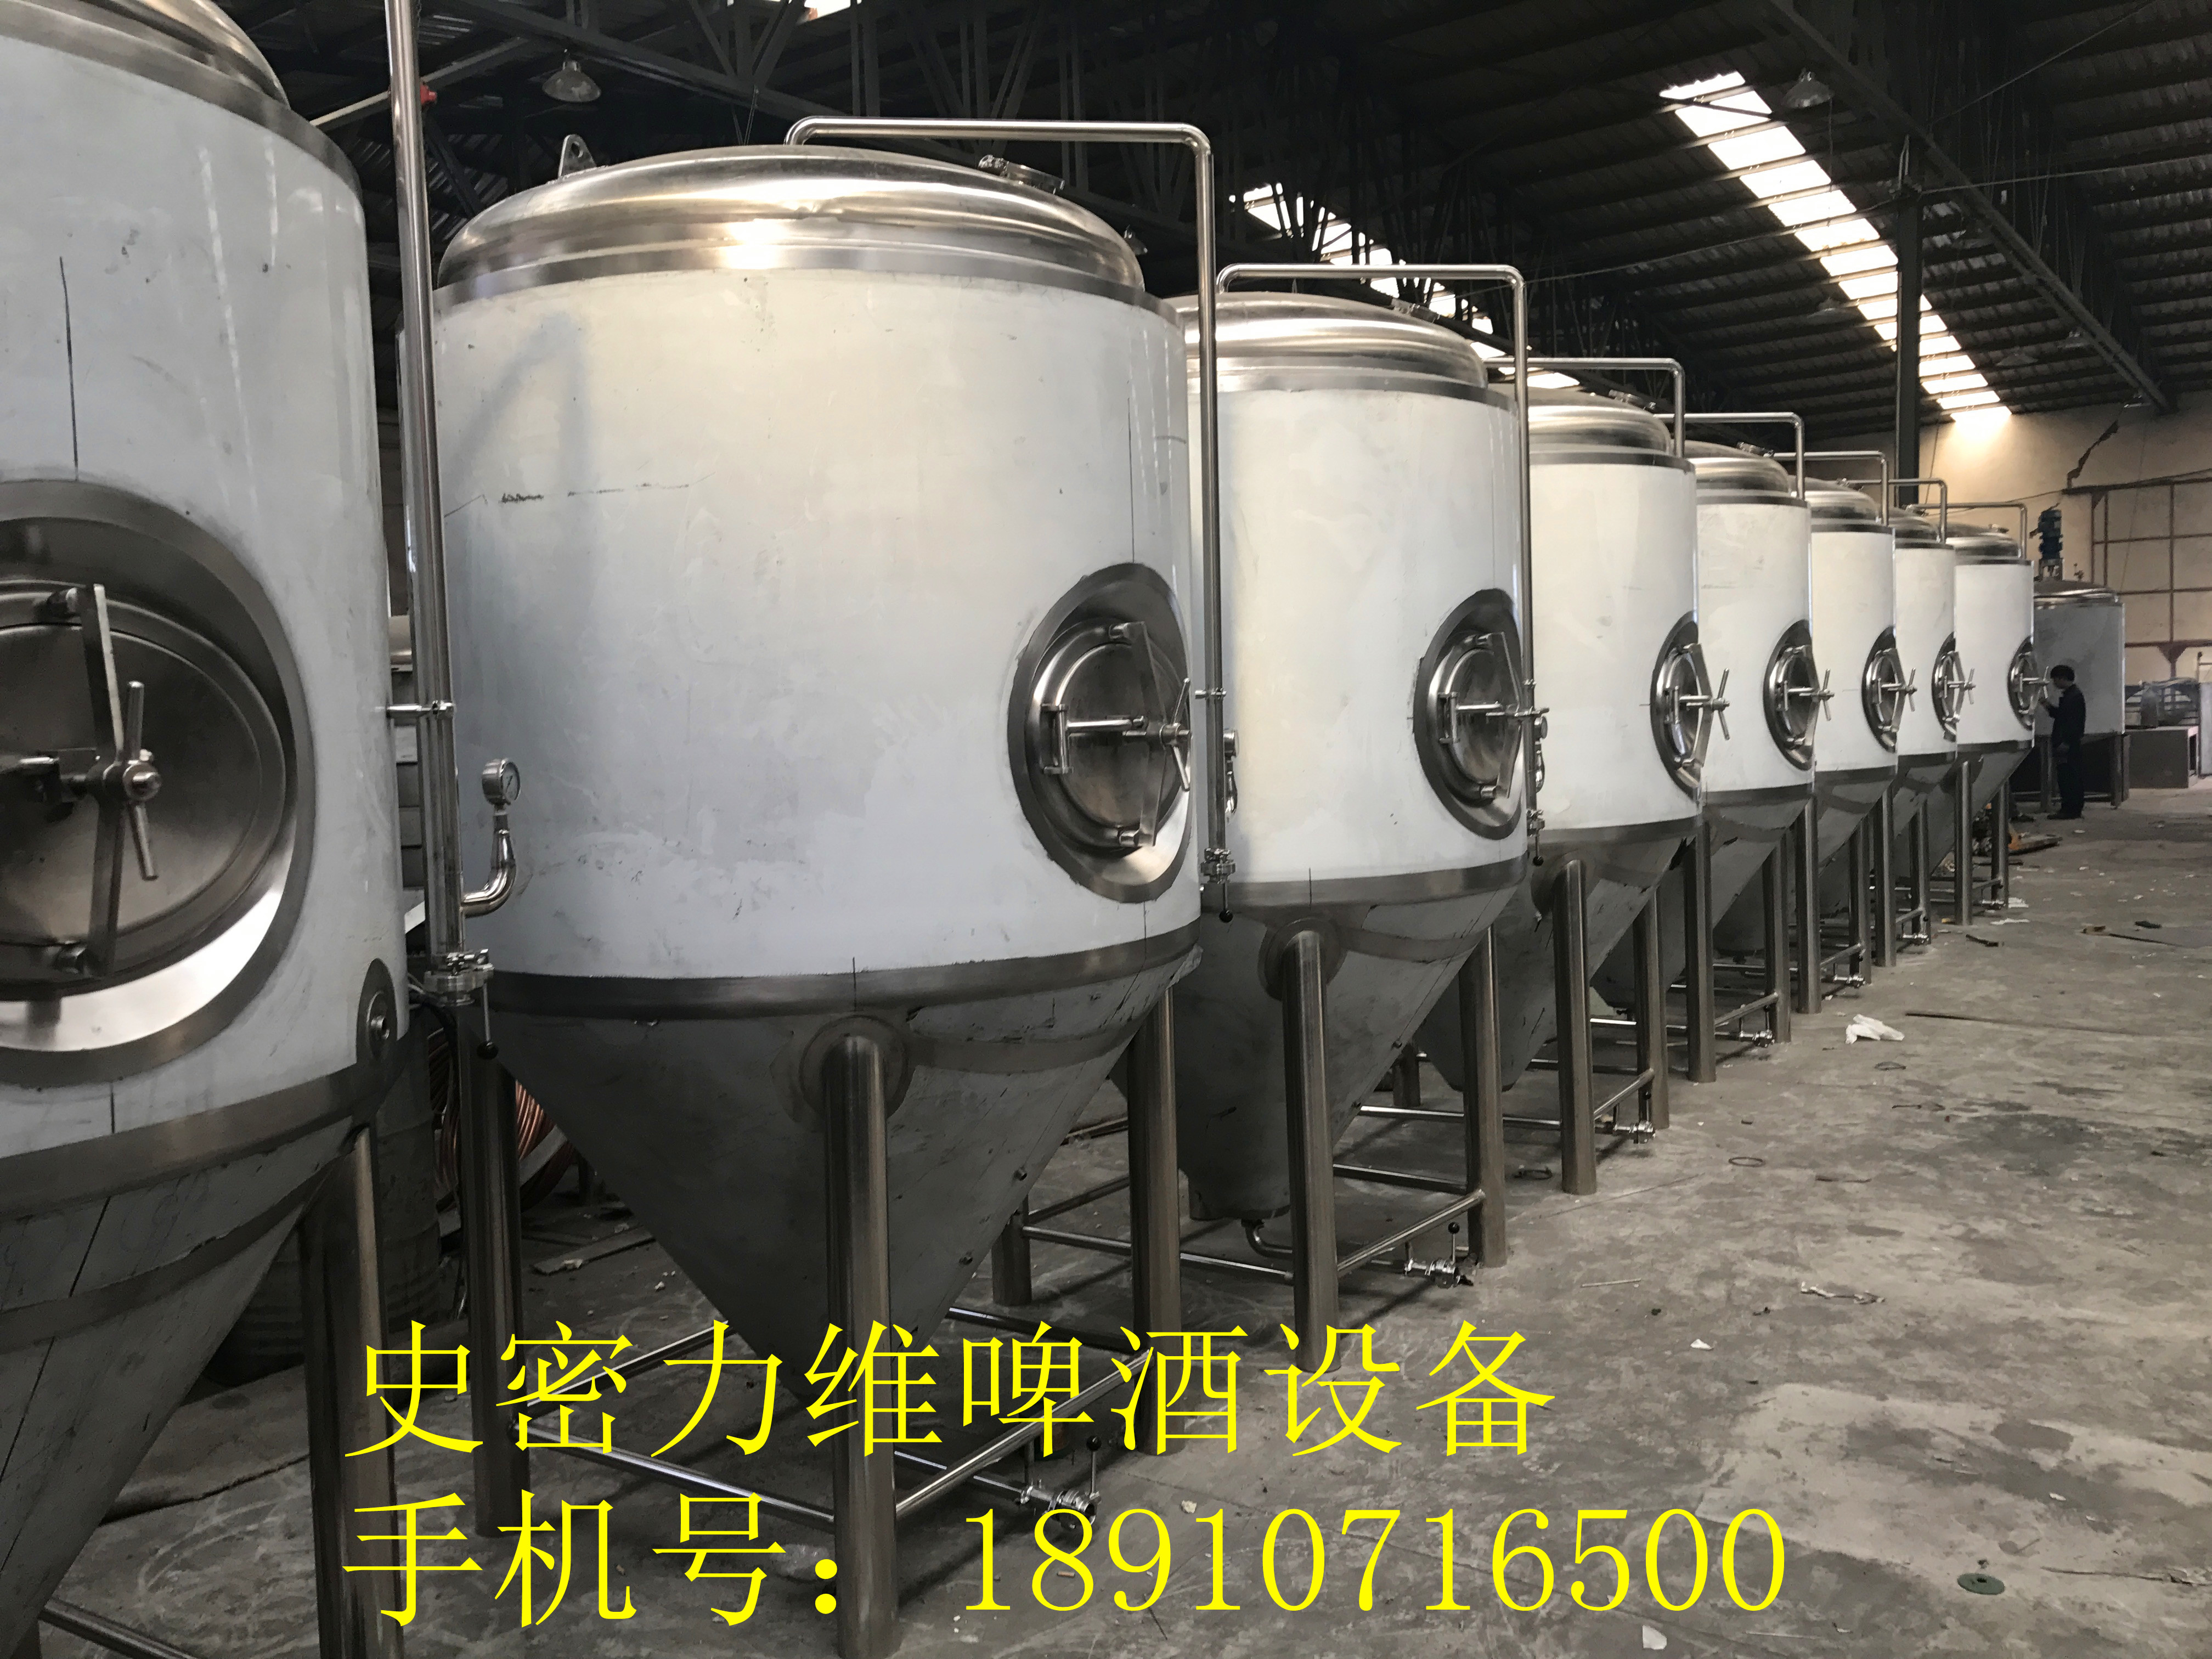 天津啤酒设备厂家 供应原浆自酿啤酒设备 小型啤酒生产设备